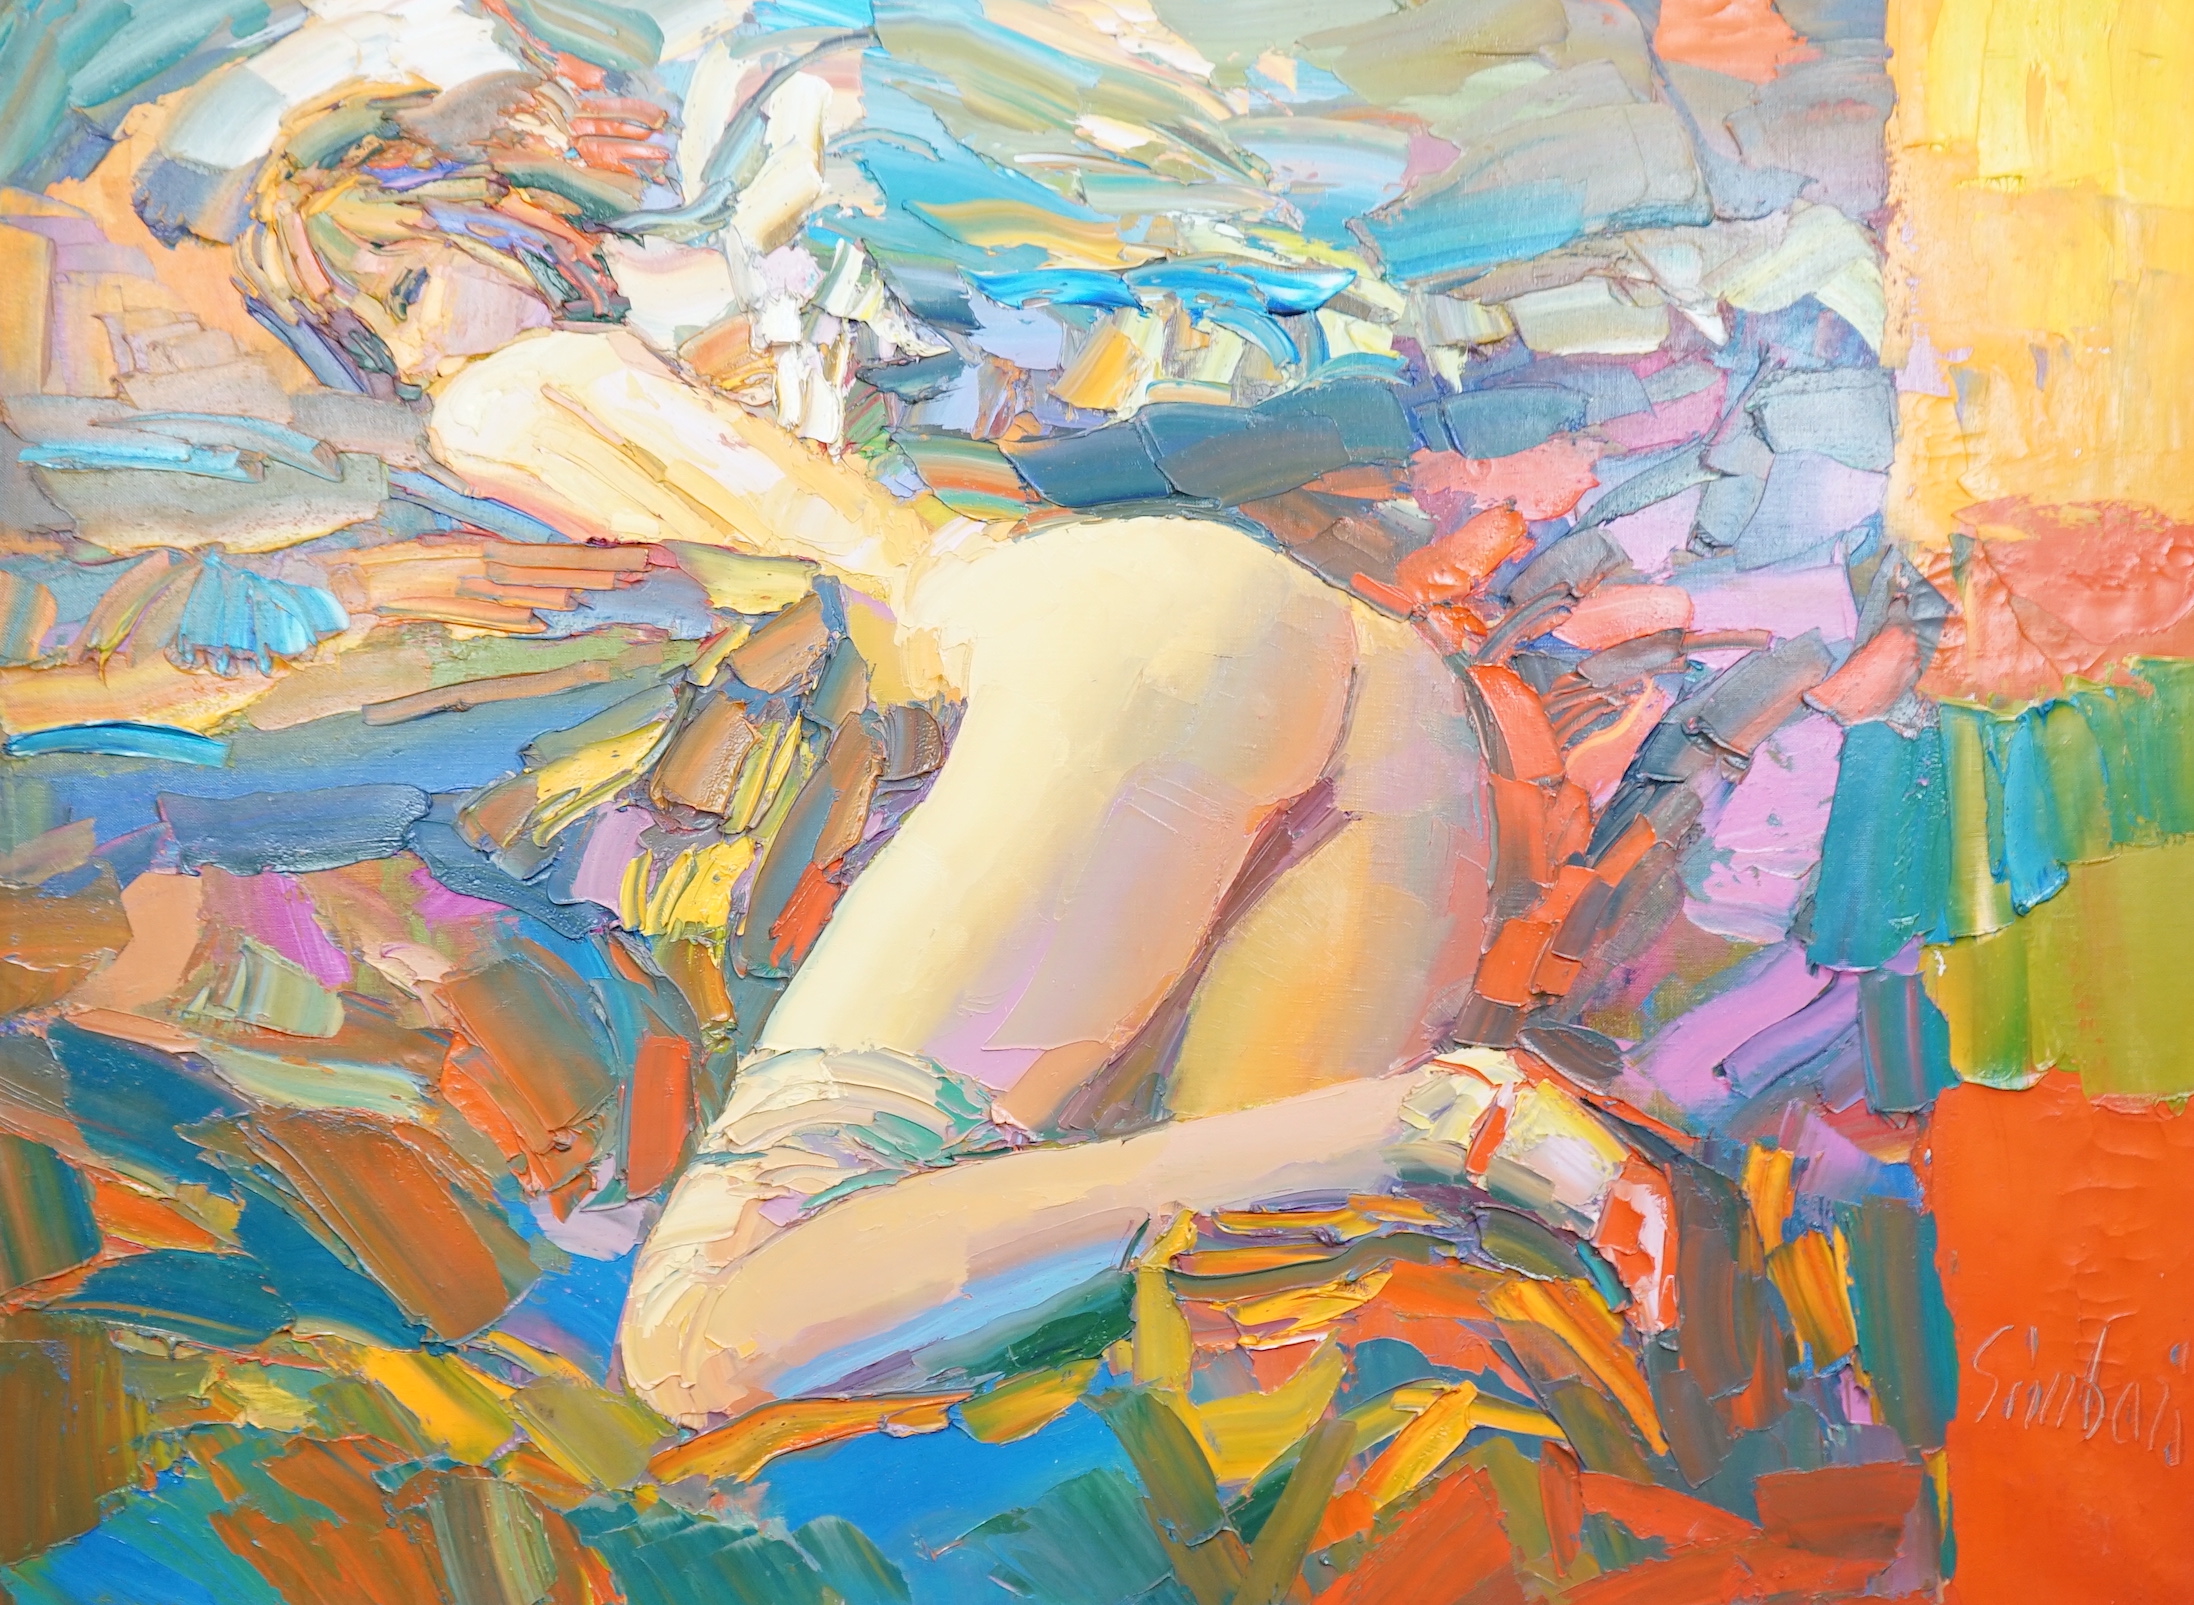 Nicola Simbari (Italian, 1927-2012), 'Pagazza Che Dorme', oil on canvas, 96 x 129cm